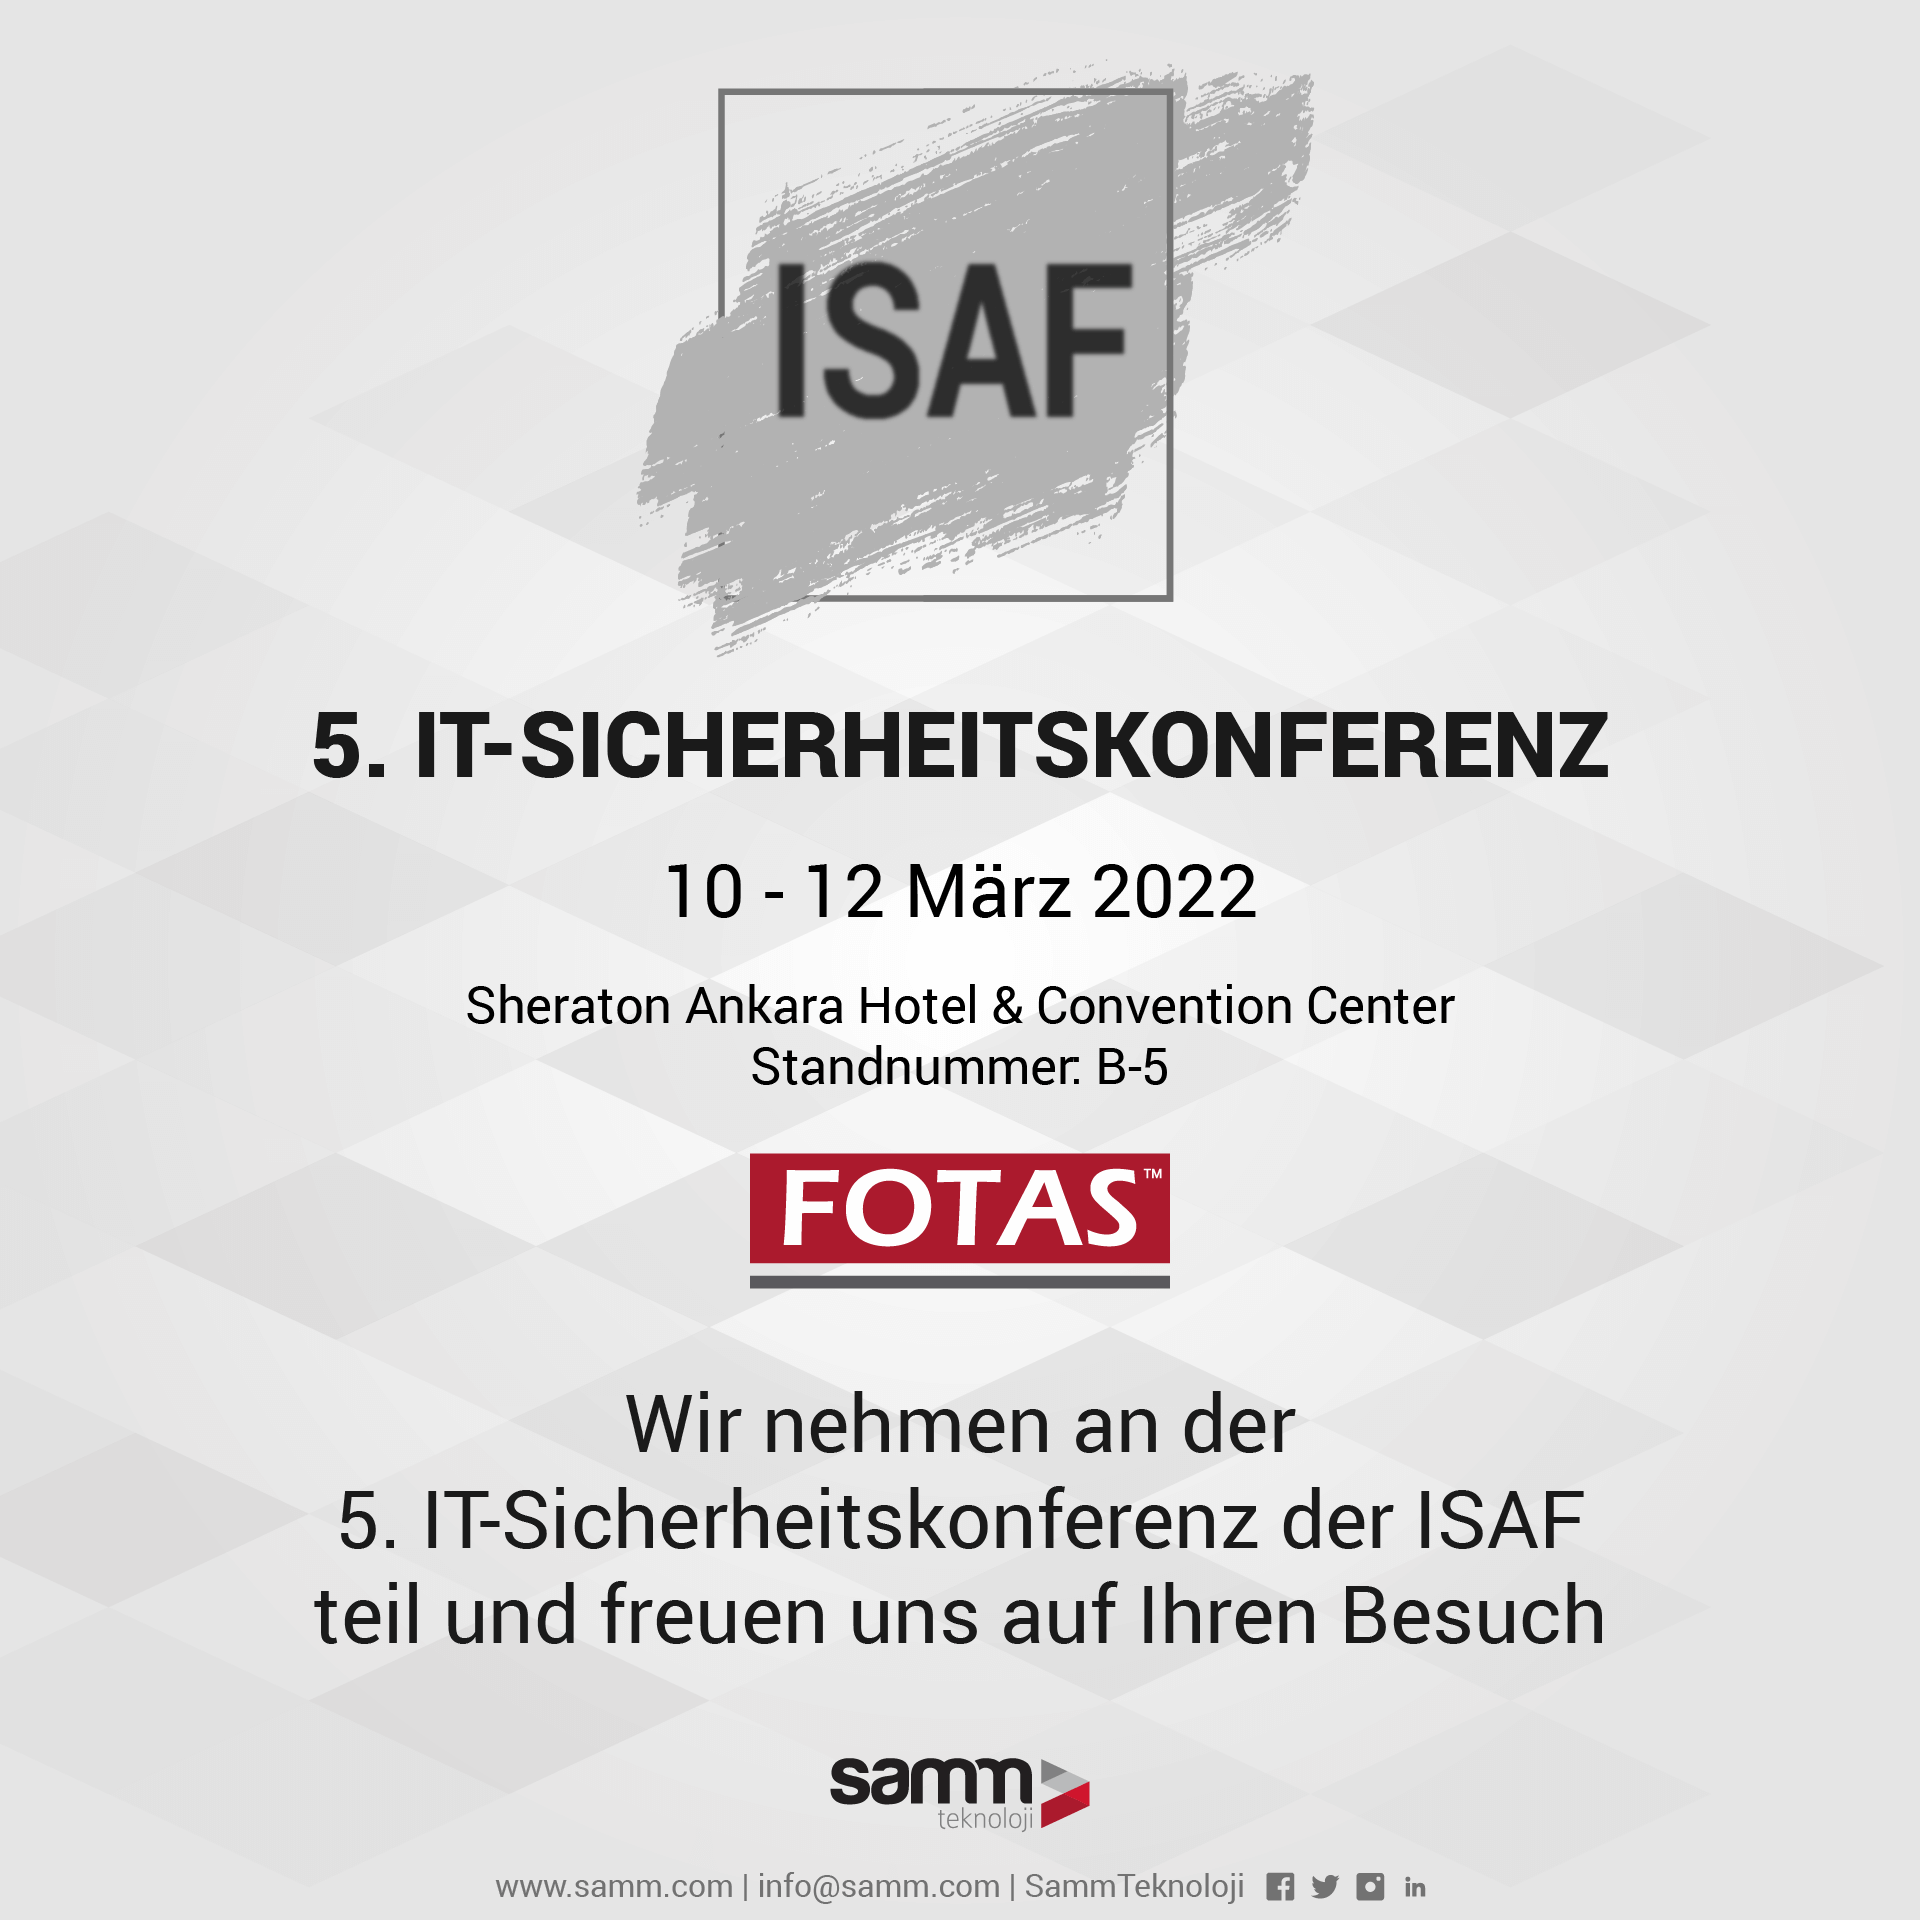 Wir nehmen an der 5. IT-Sicherheitskonferenz der ISAF teil